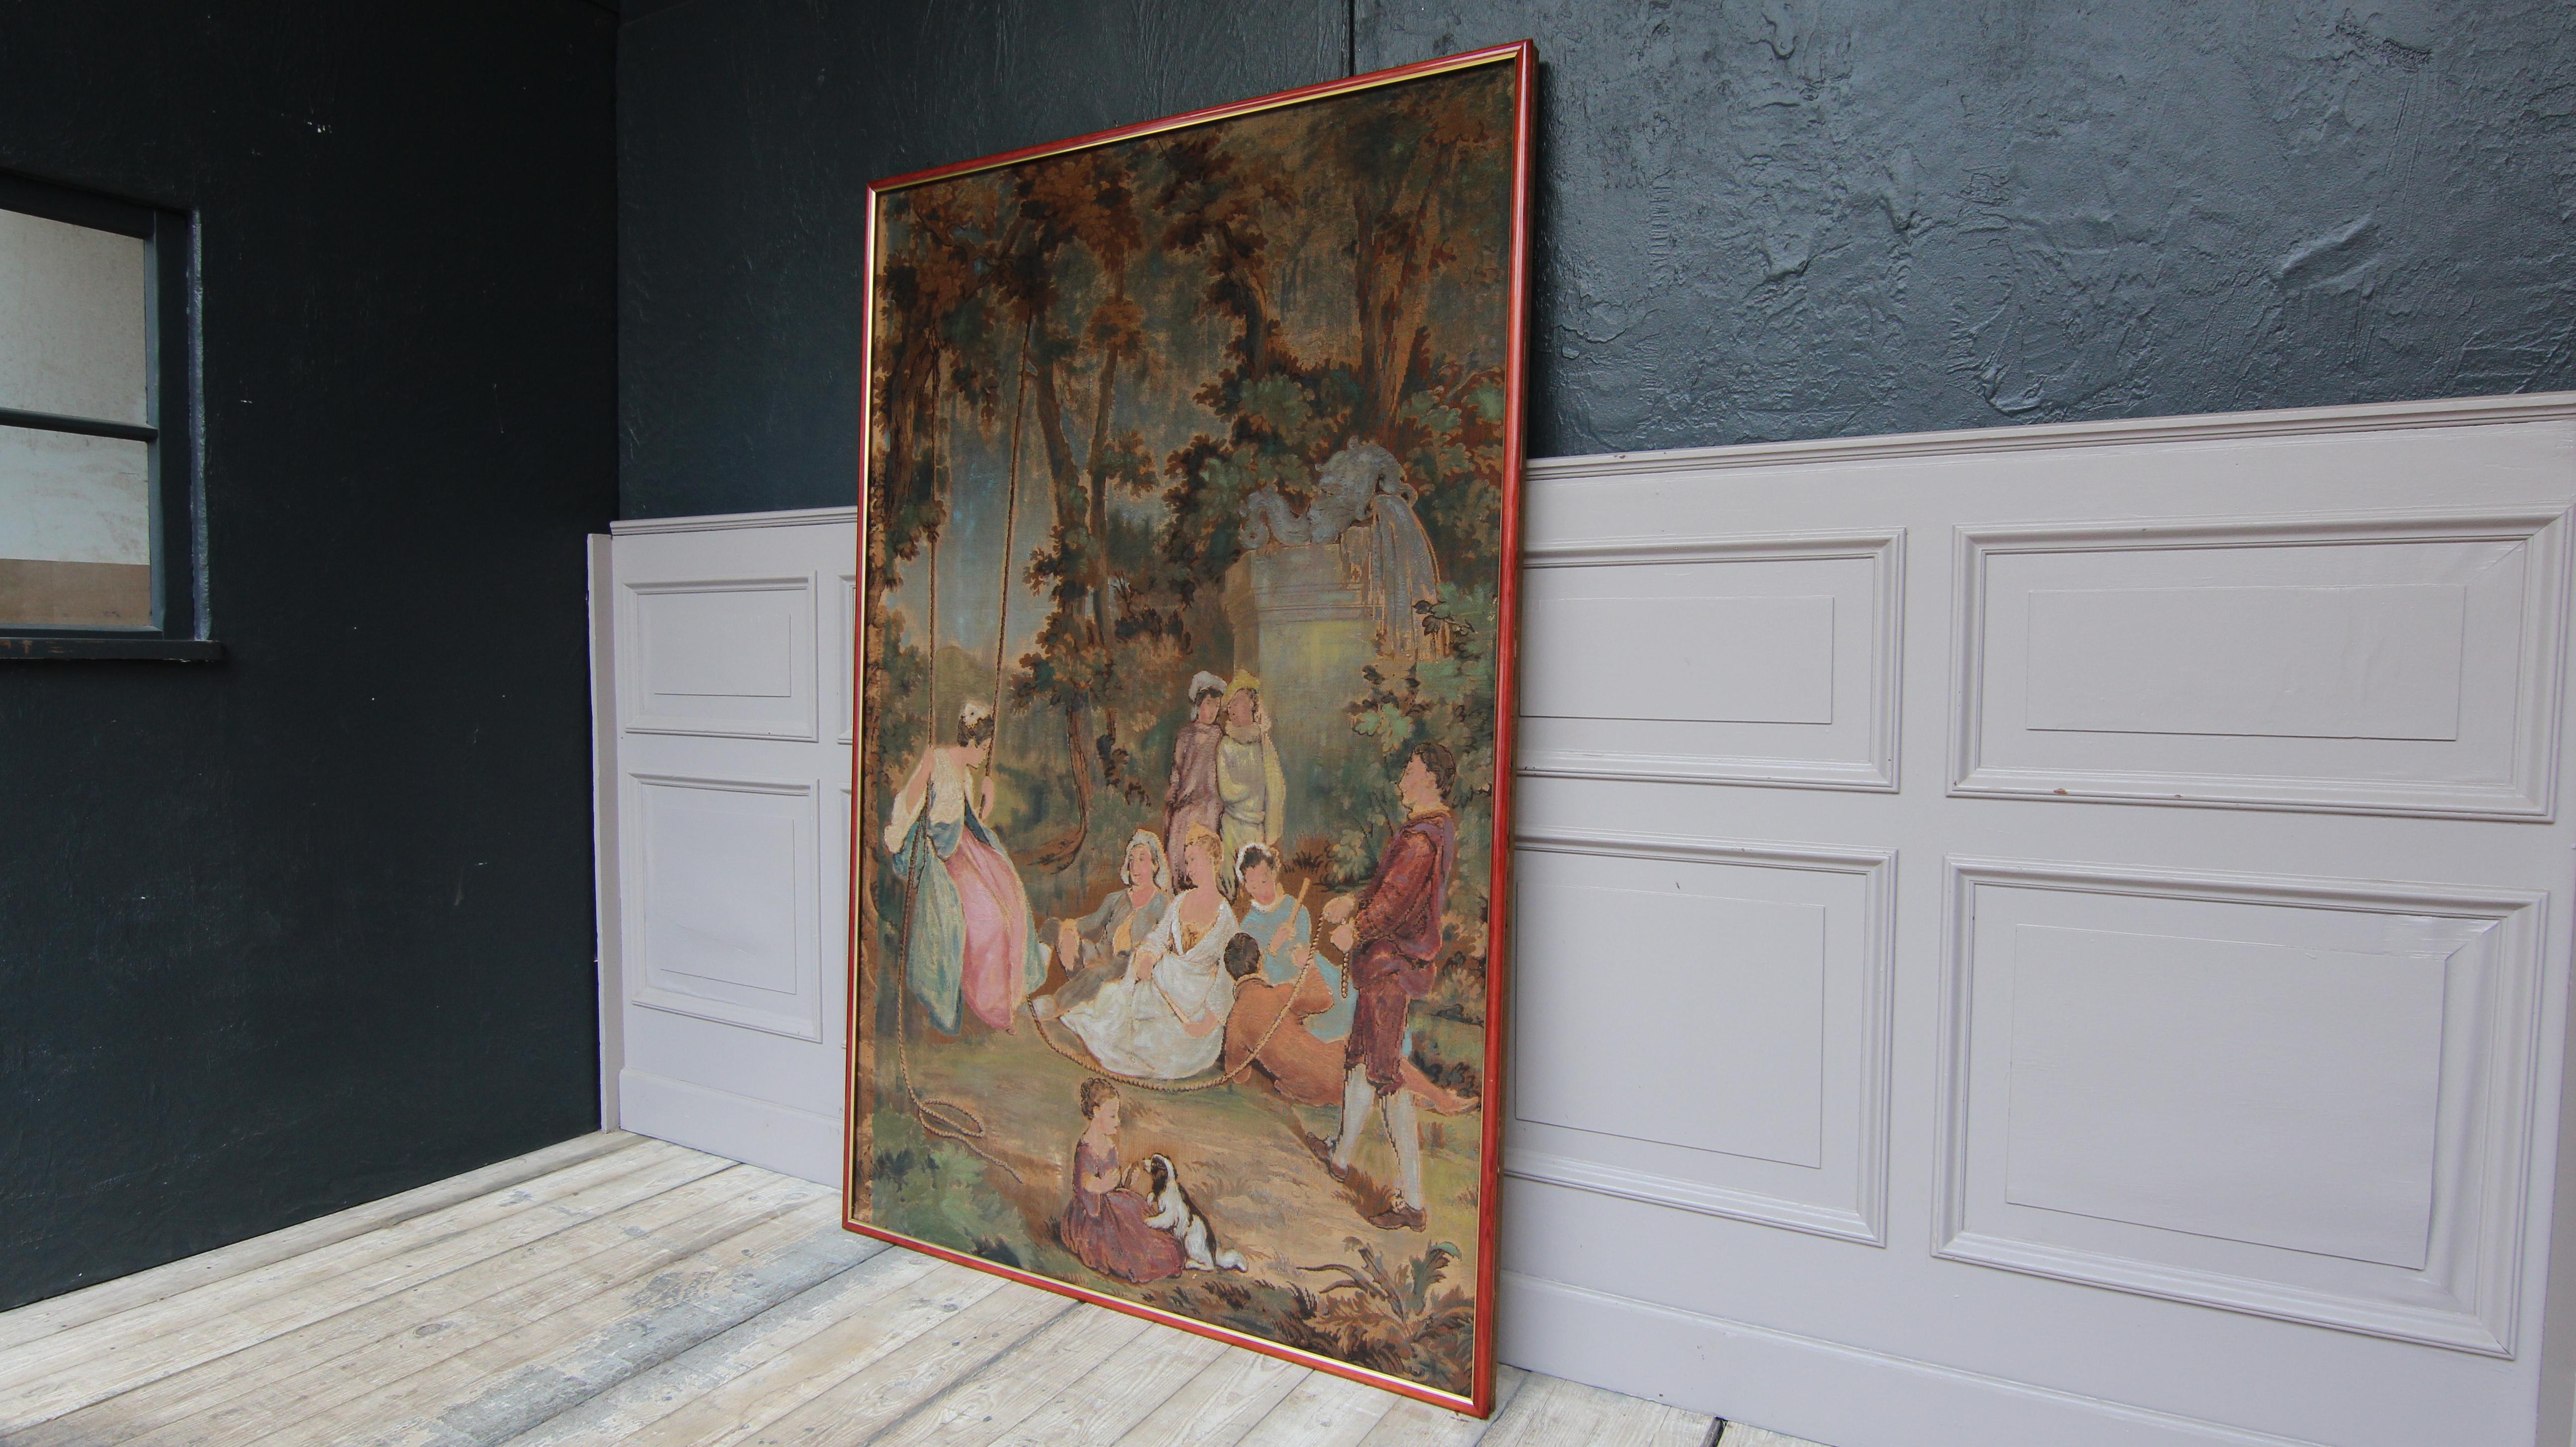 Baroque 20th Century European Romantic Framed Gobelin or Tapestry